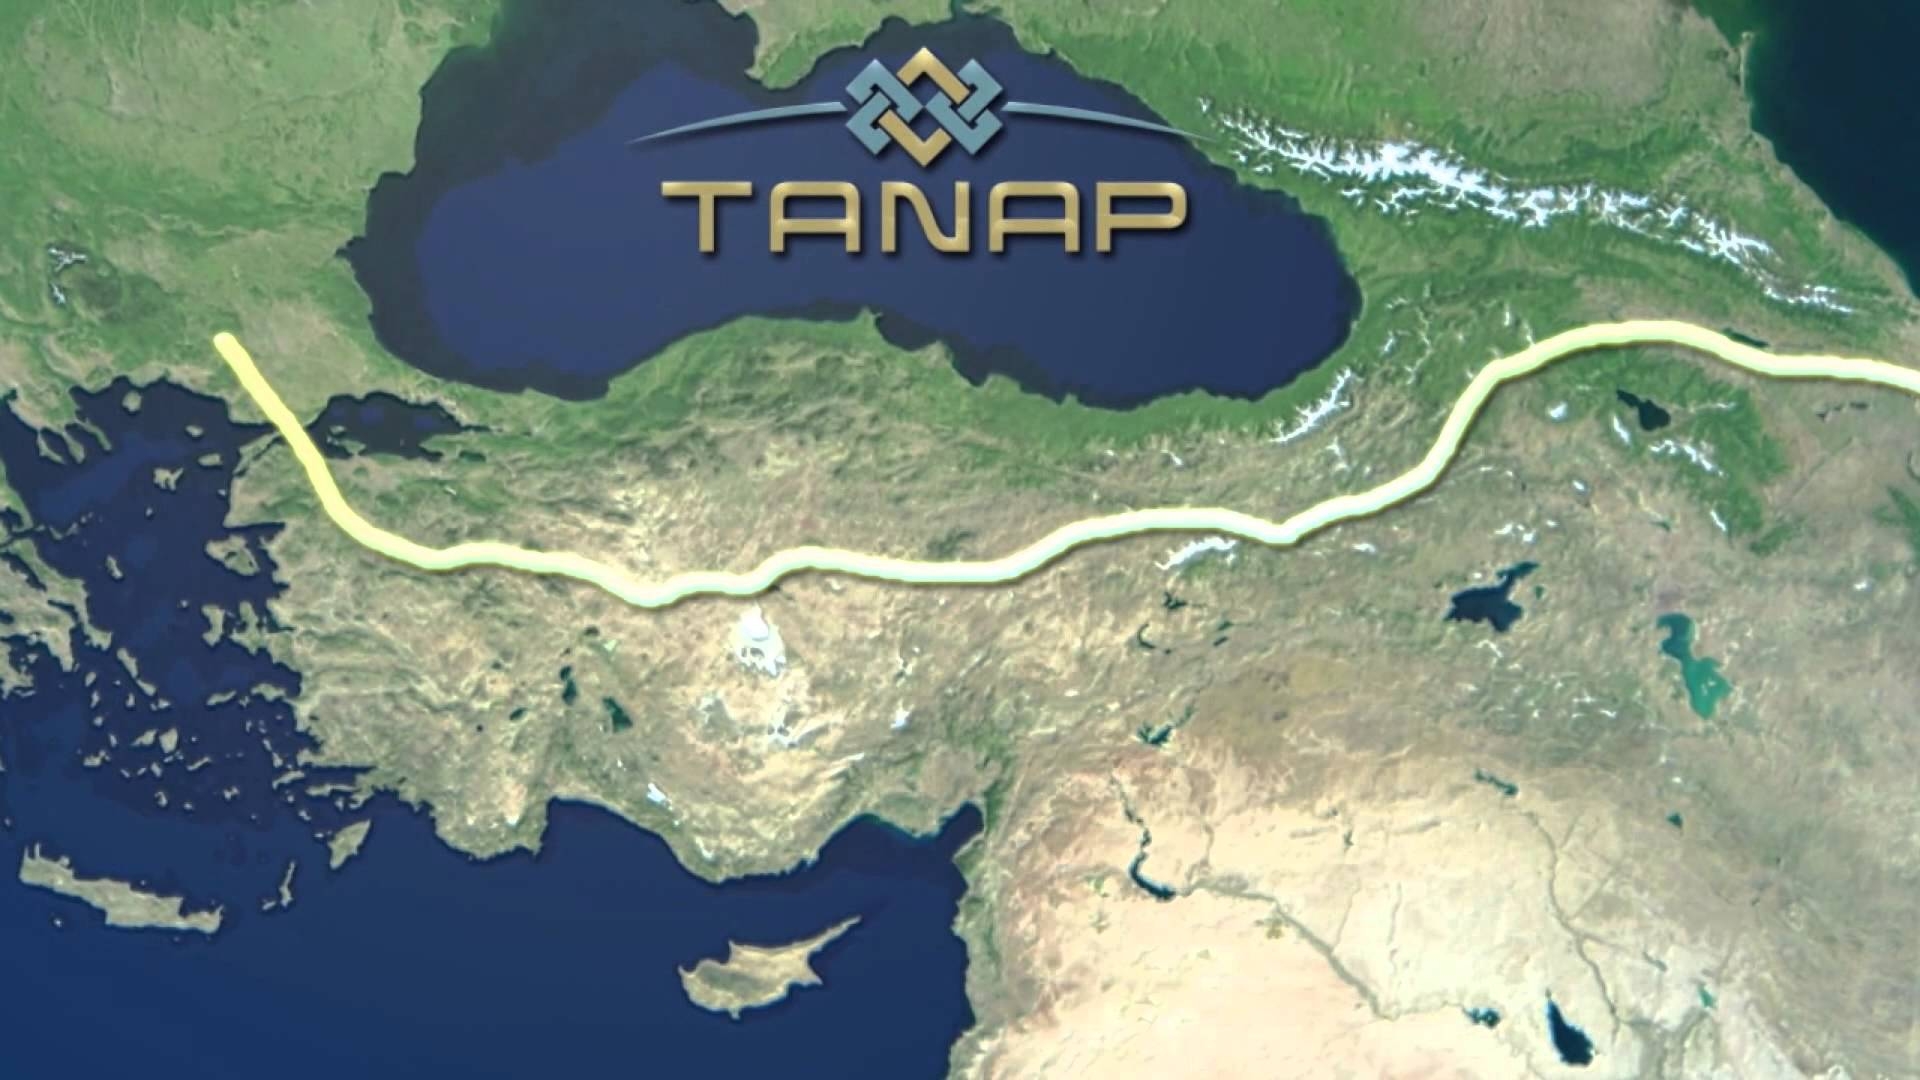 Обнародована дата открытия второй фазы TANAP